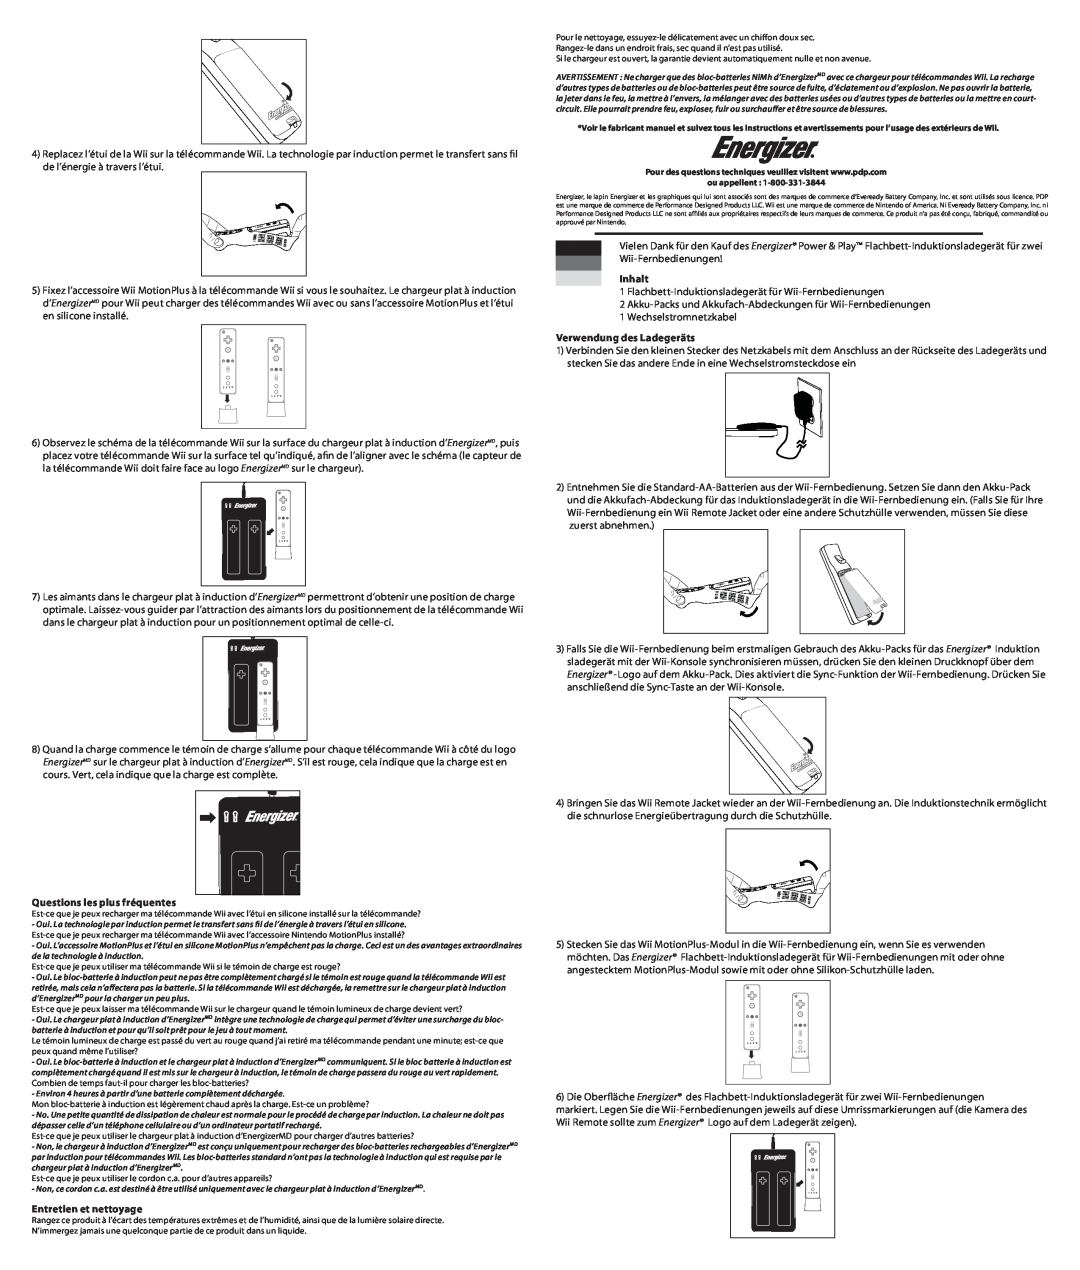 PDP PL-7581 manual Inhalt, Verwendung des Ladegeräts, Questions les plus fréquentes, Entretien et nettoyage 